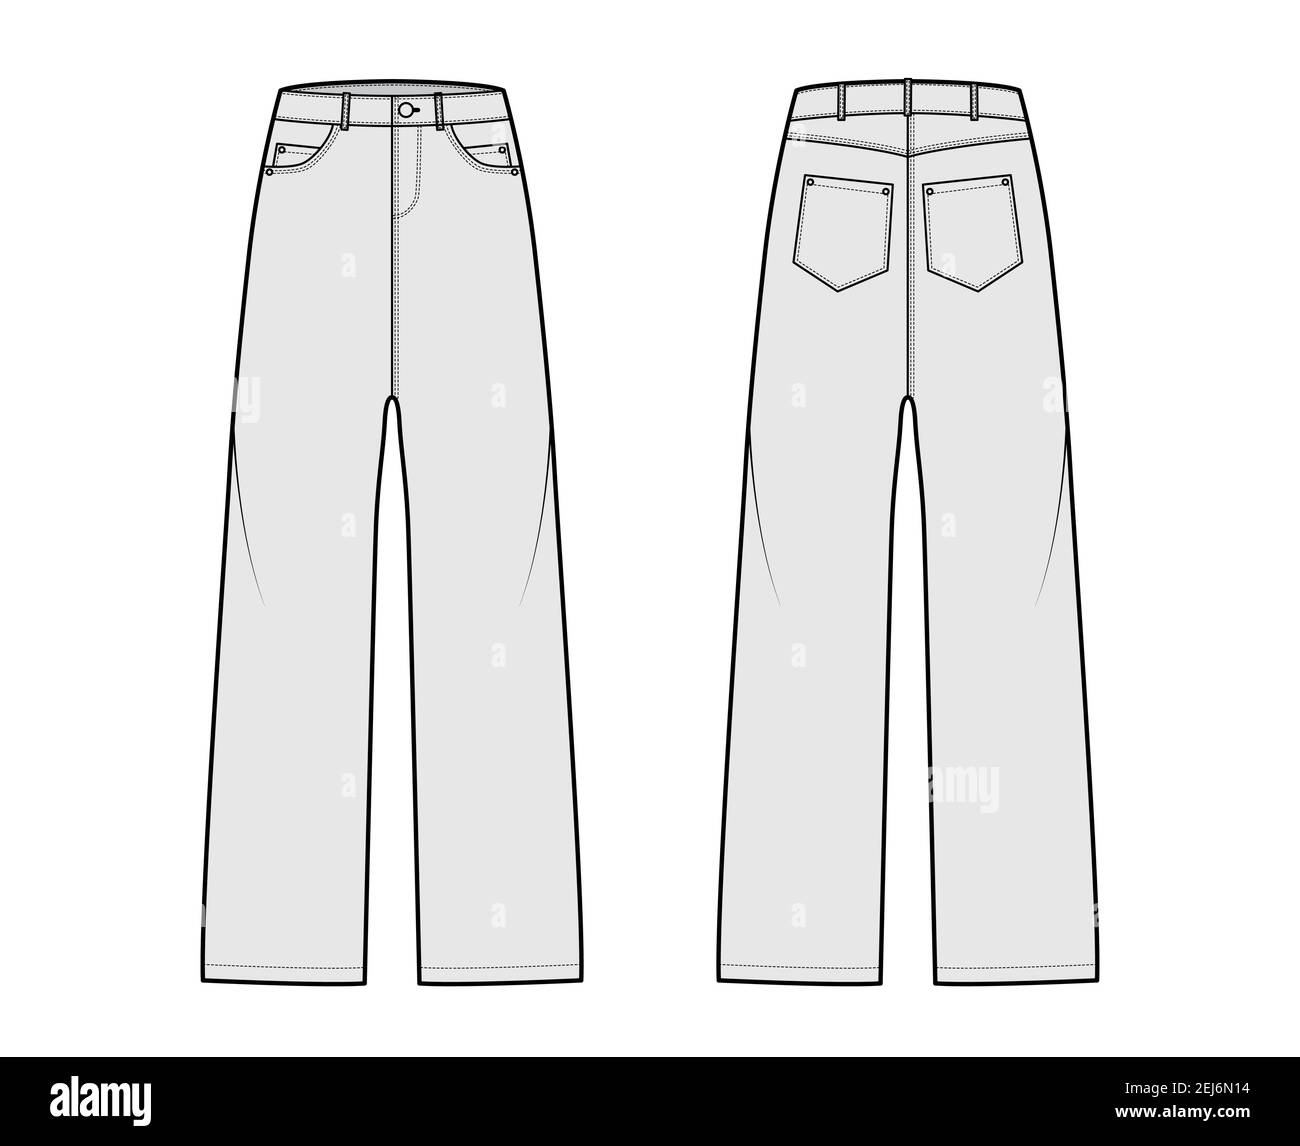 Baggy Jeans pantalones ilustración técnica de moda con longitud completa, cintura baja, elevación, remaches, trabillas. Plantilla de de fondo en la parte delantera, trasera, estilo de blanco. Mujeres,